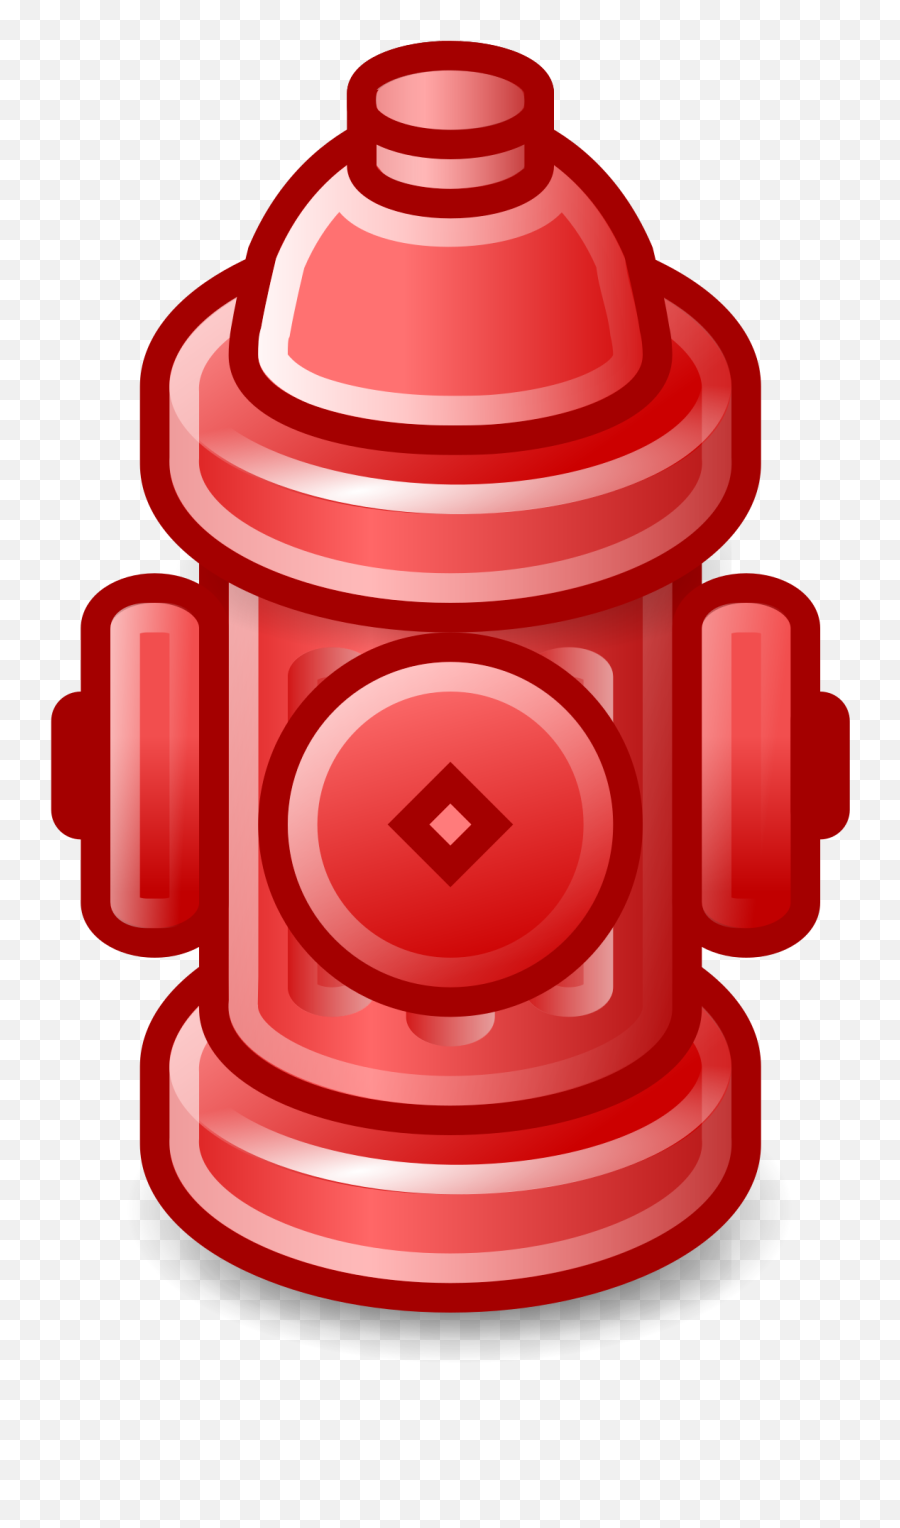 Emoji Clipart Fire Emoji Fire Transparent Free For Download - Transparent Fire Hydrant Clipart,Fire Emoji